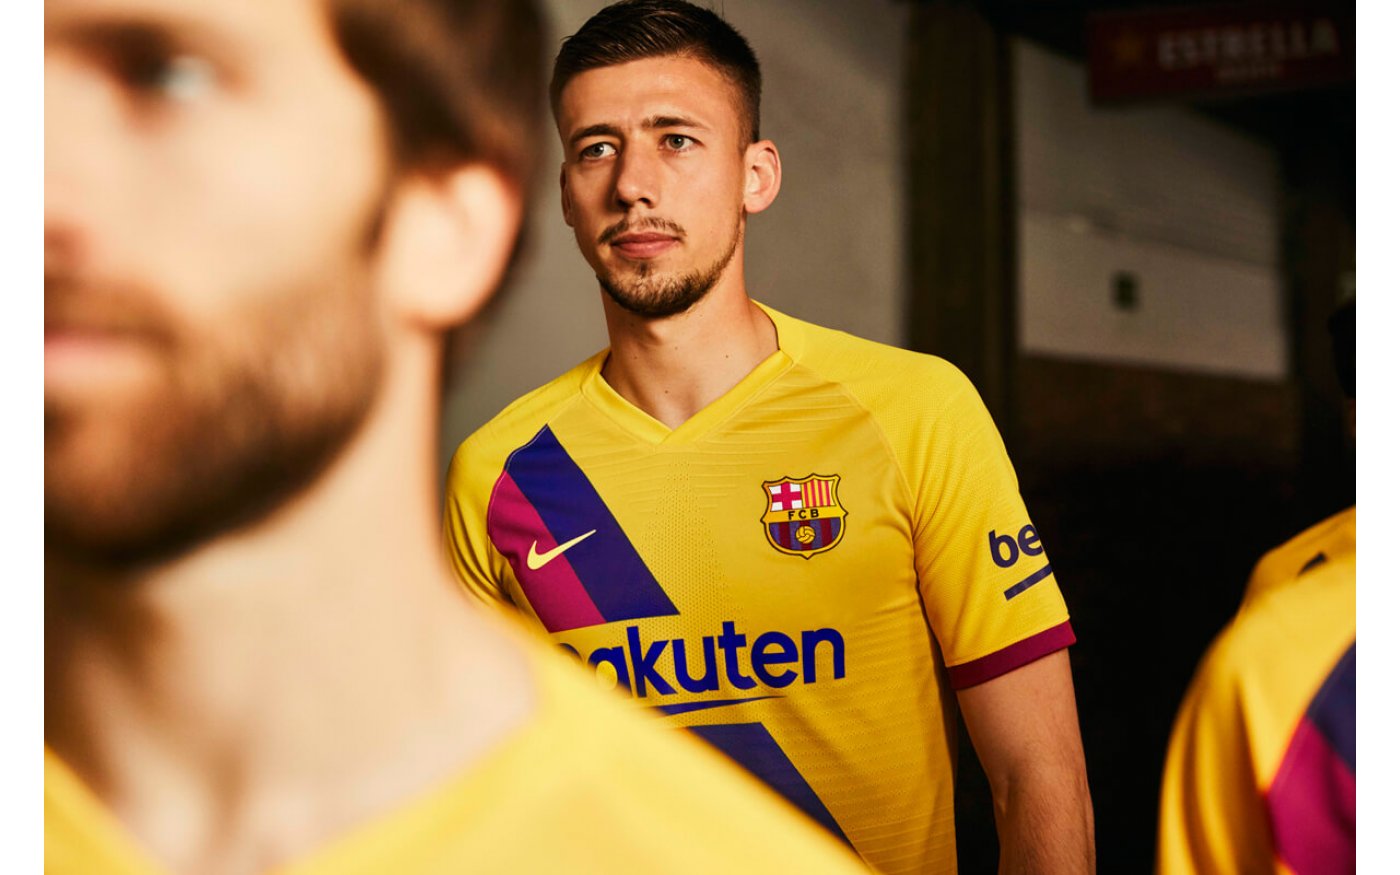 Camiseta de Fútbol Lionel Leo Messi 10 Barcelona Barça Home Temporada 2018-2019 Replica Oficial con Licencia Todos Los Tamaños NIÑO y Adulto 